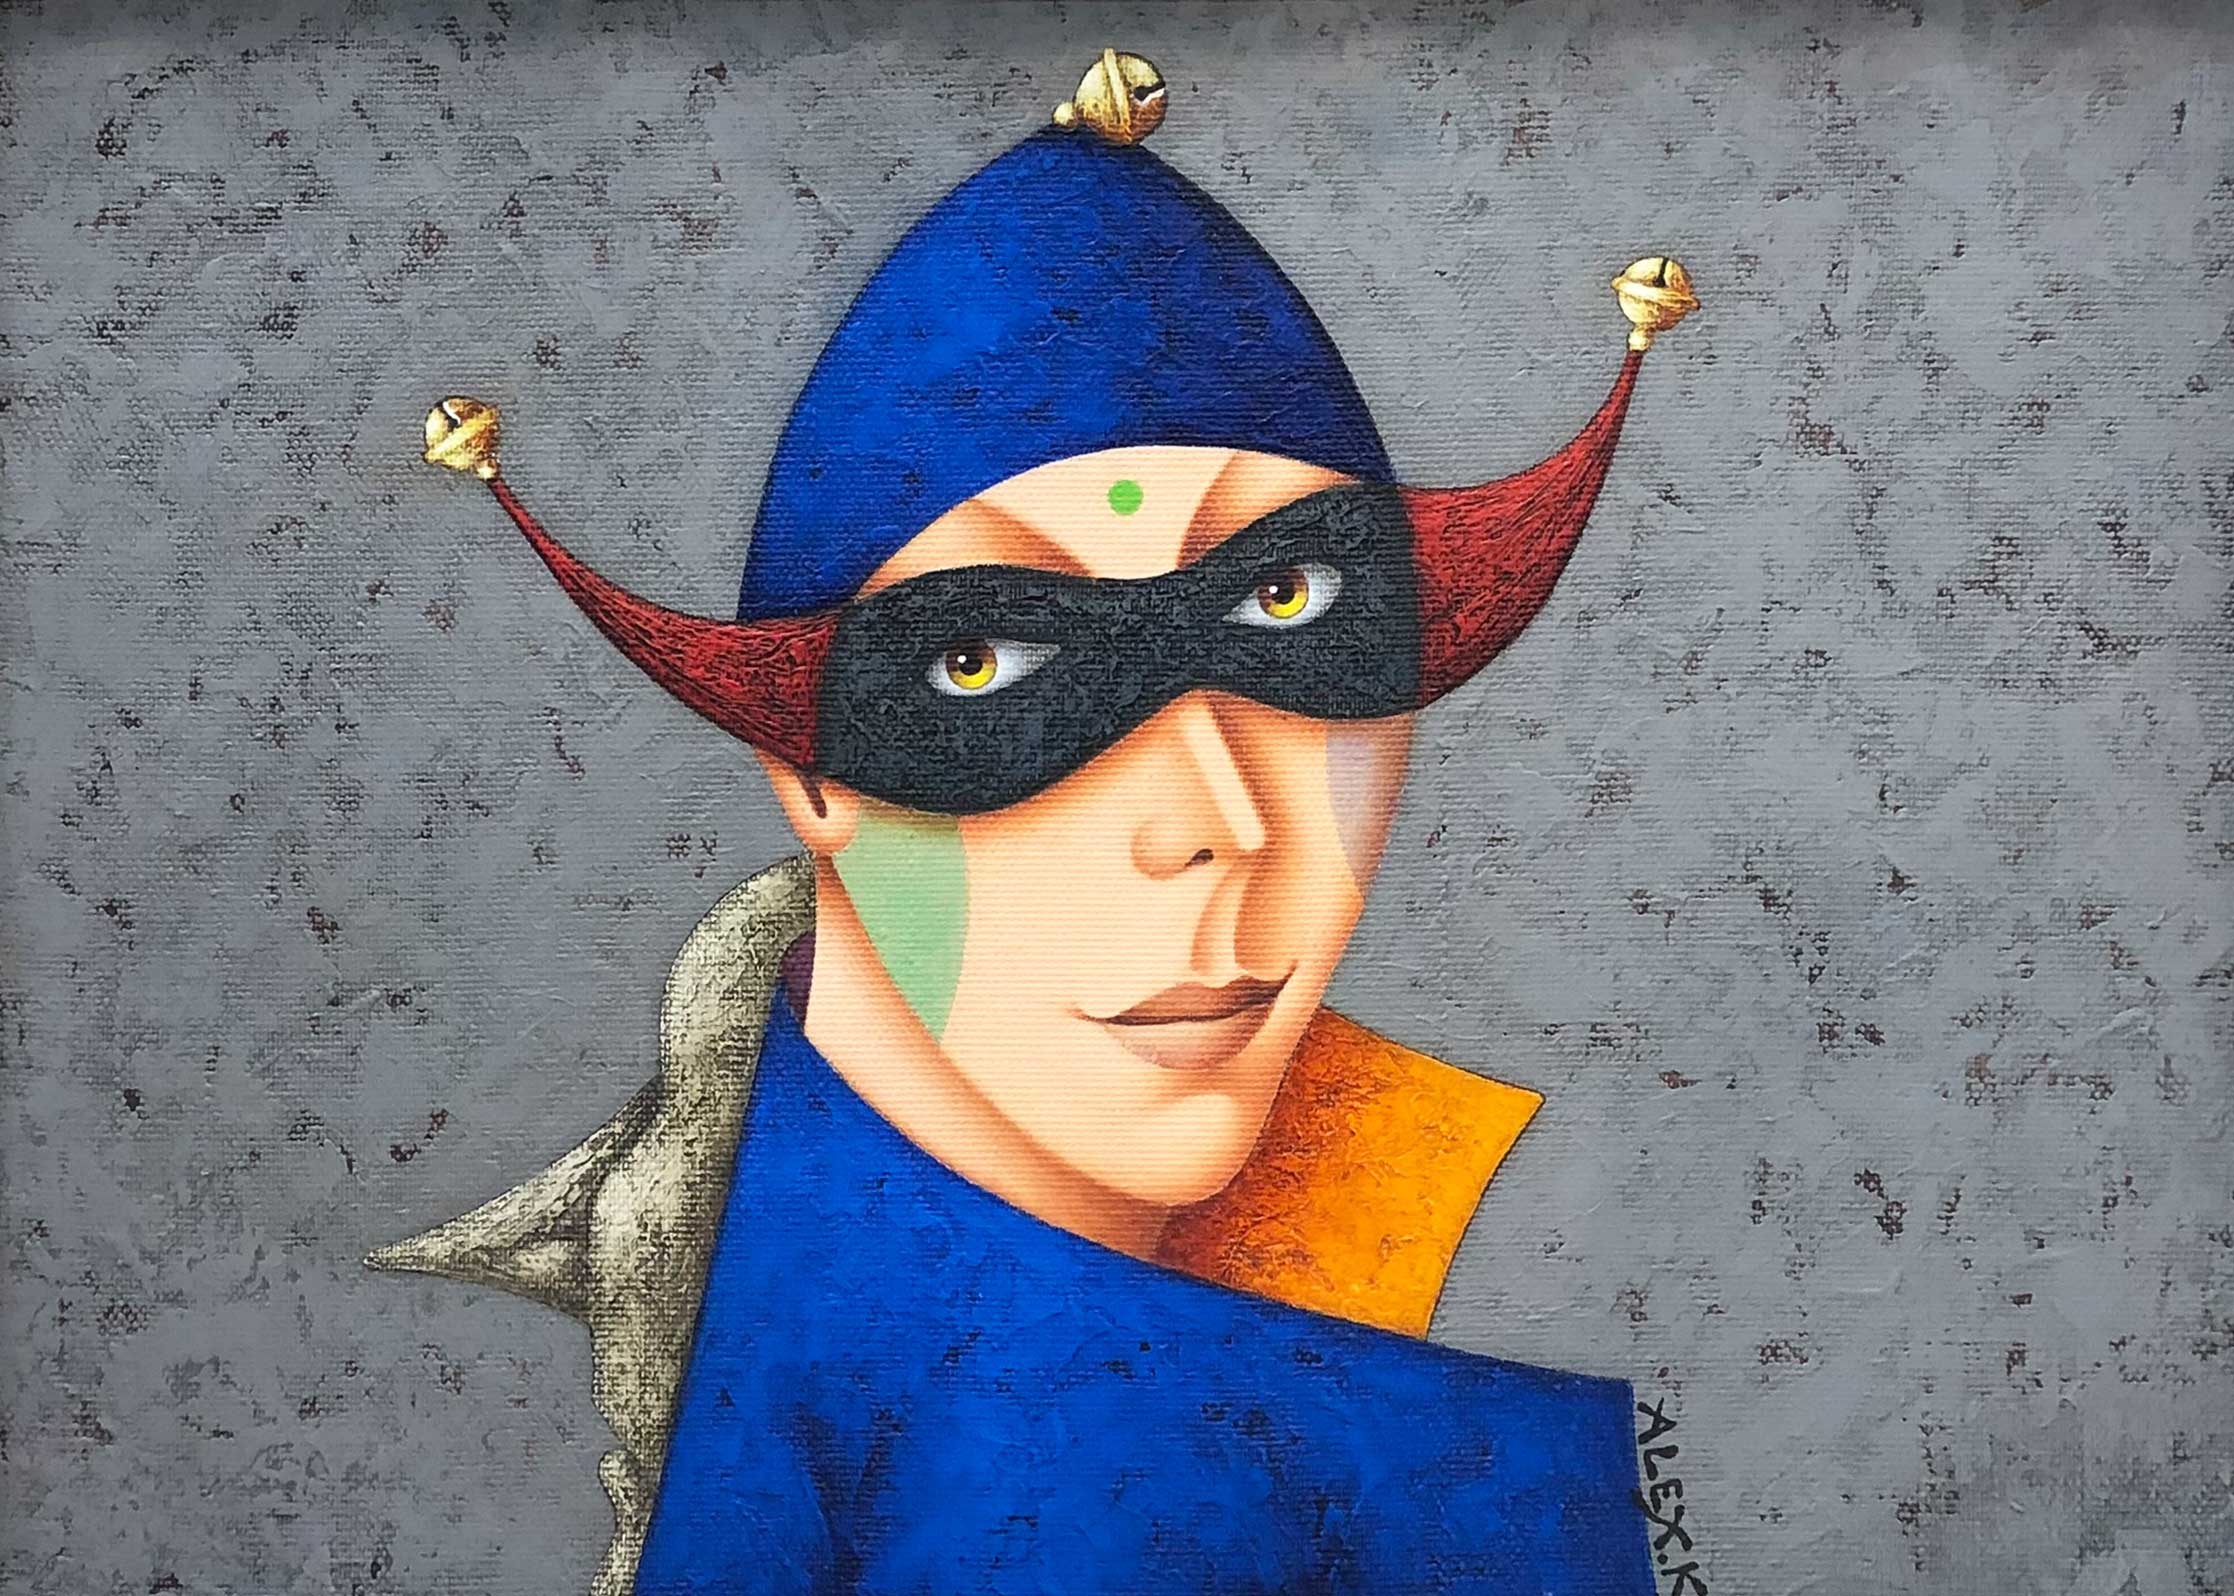 Masquerade - 1, Alexey Kiryanov, Buy the painting Oil